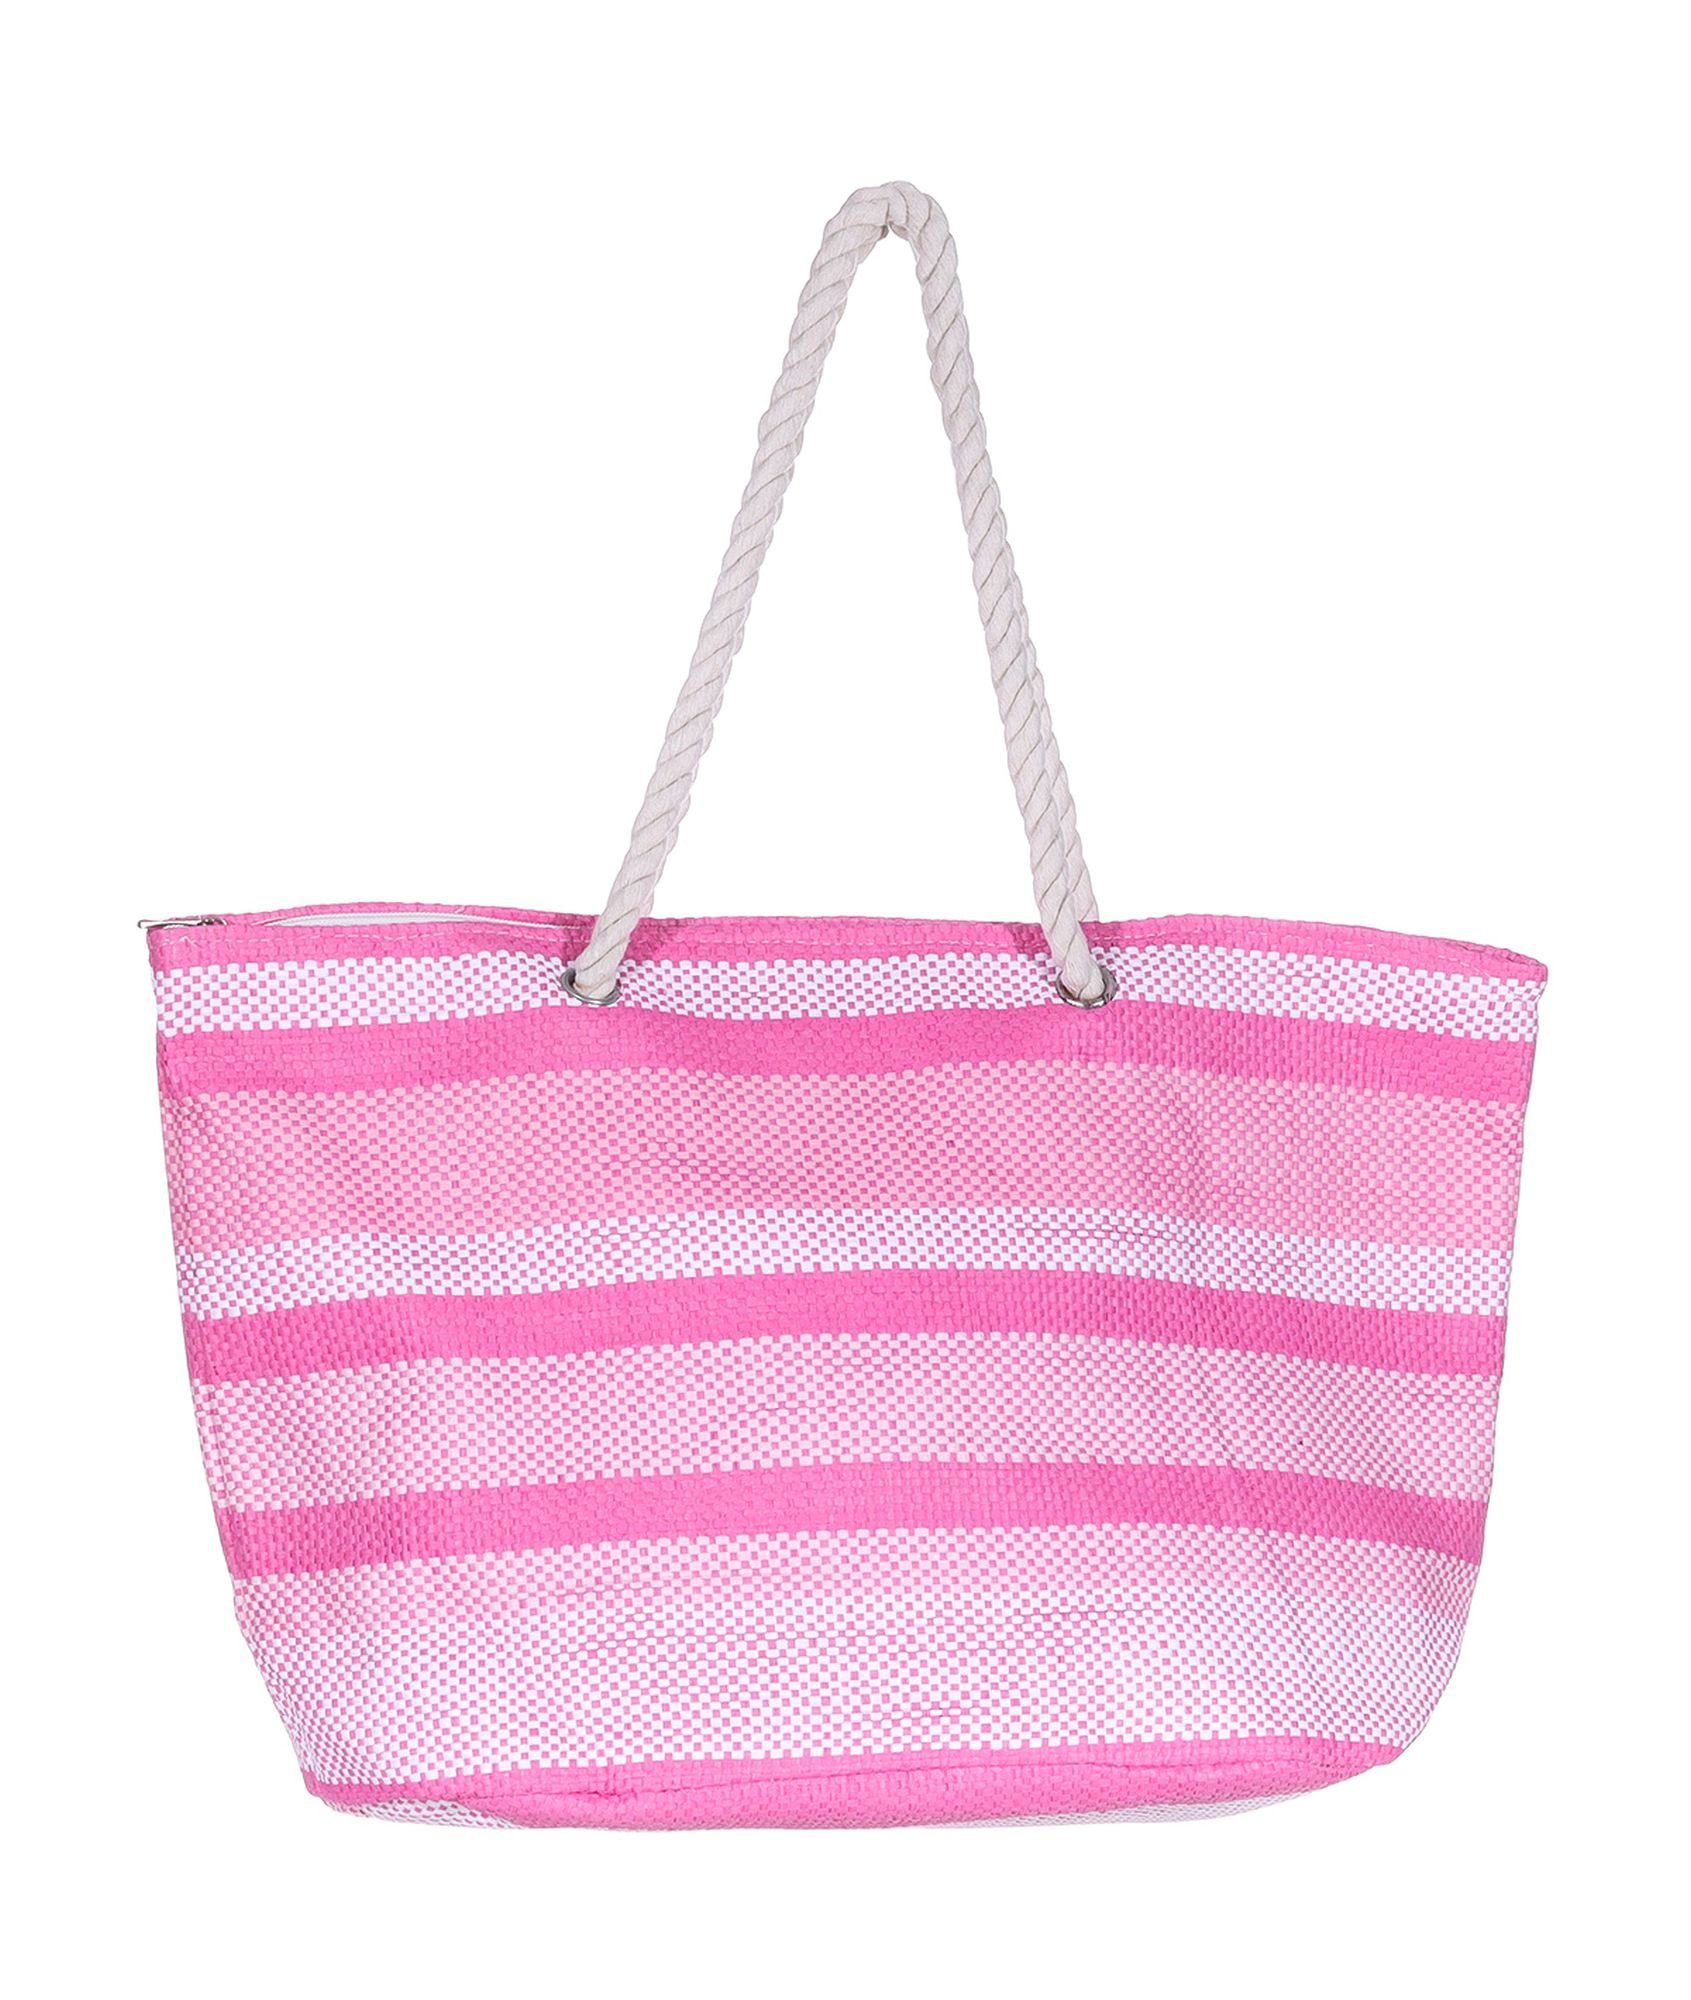 Silkroda Badetasche Tasche Weiß Strandtasche - Markenwarenshop-Style Shopper Pink Rosa gestreift